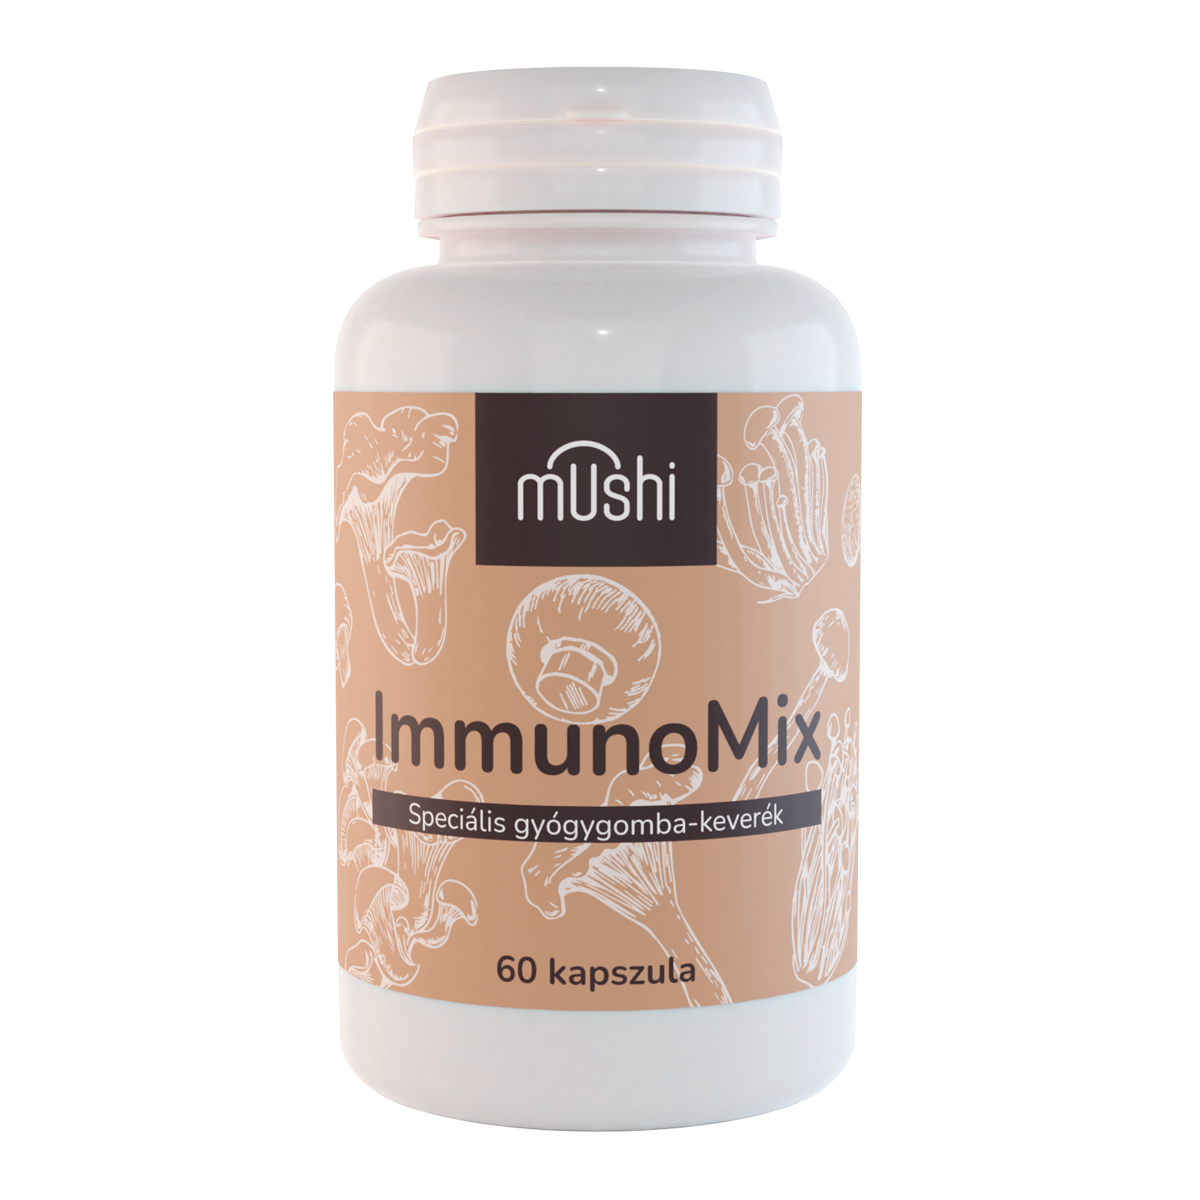 Mushi ImmunoMix gyógygomba keverék kapszula 60 db 